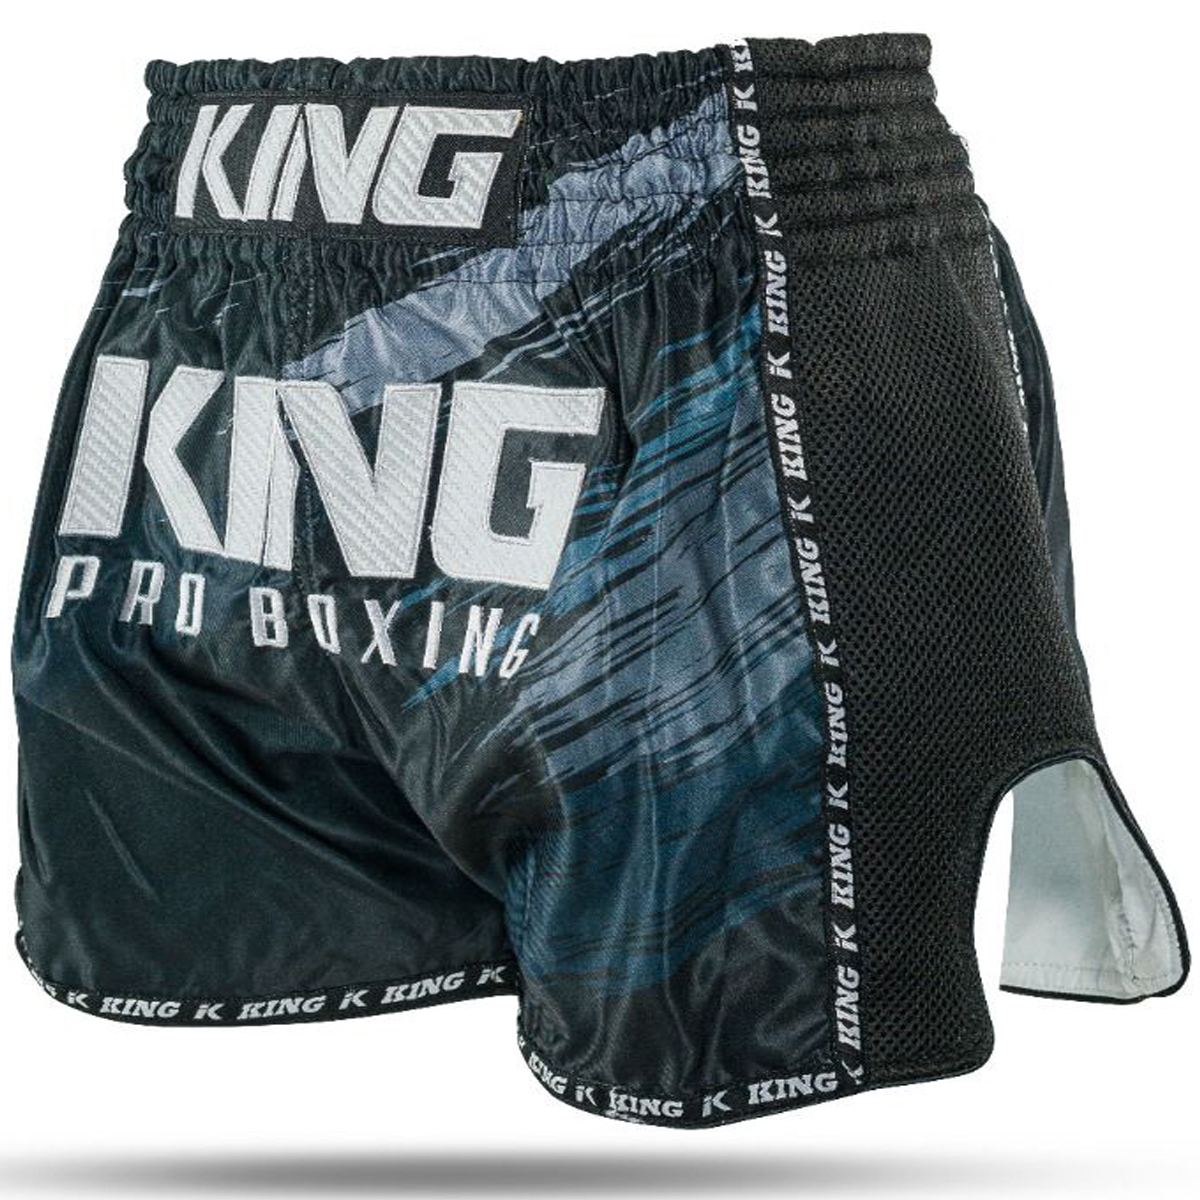 Short de King Pro Boxing Storm - Noir - Gris